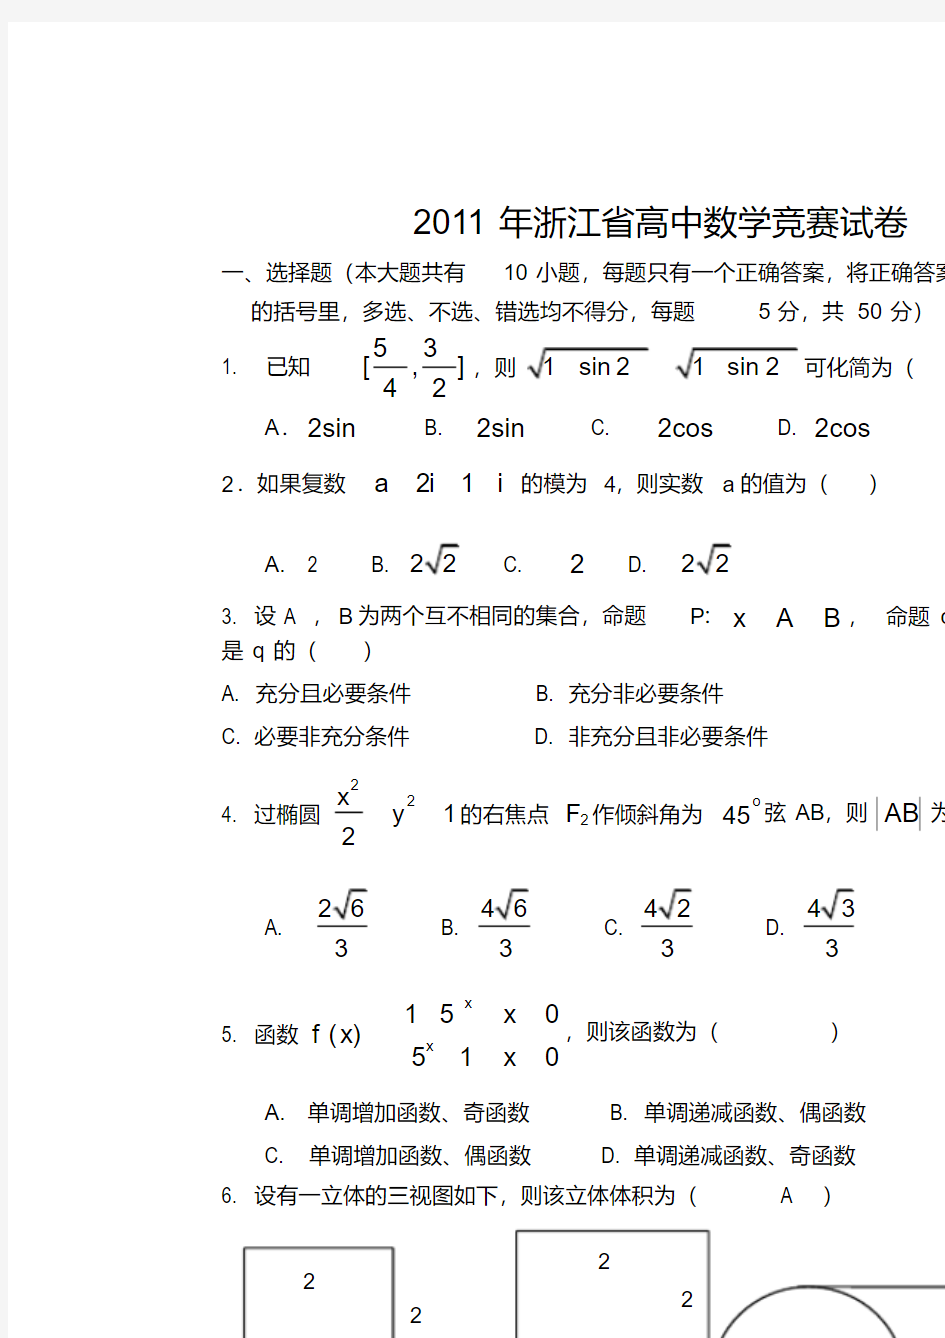 浙江省高中数学竞赛试题及详细解析答案(20210103222821)